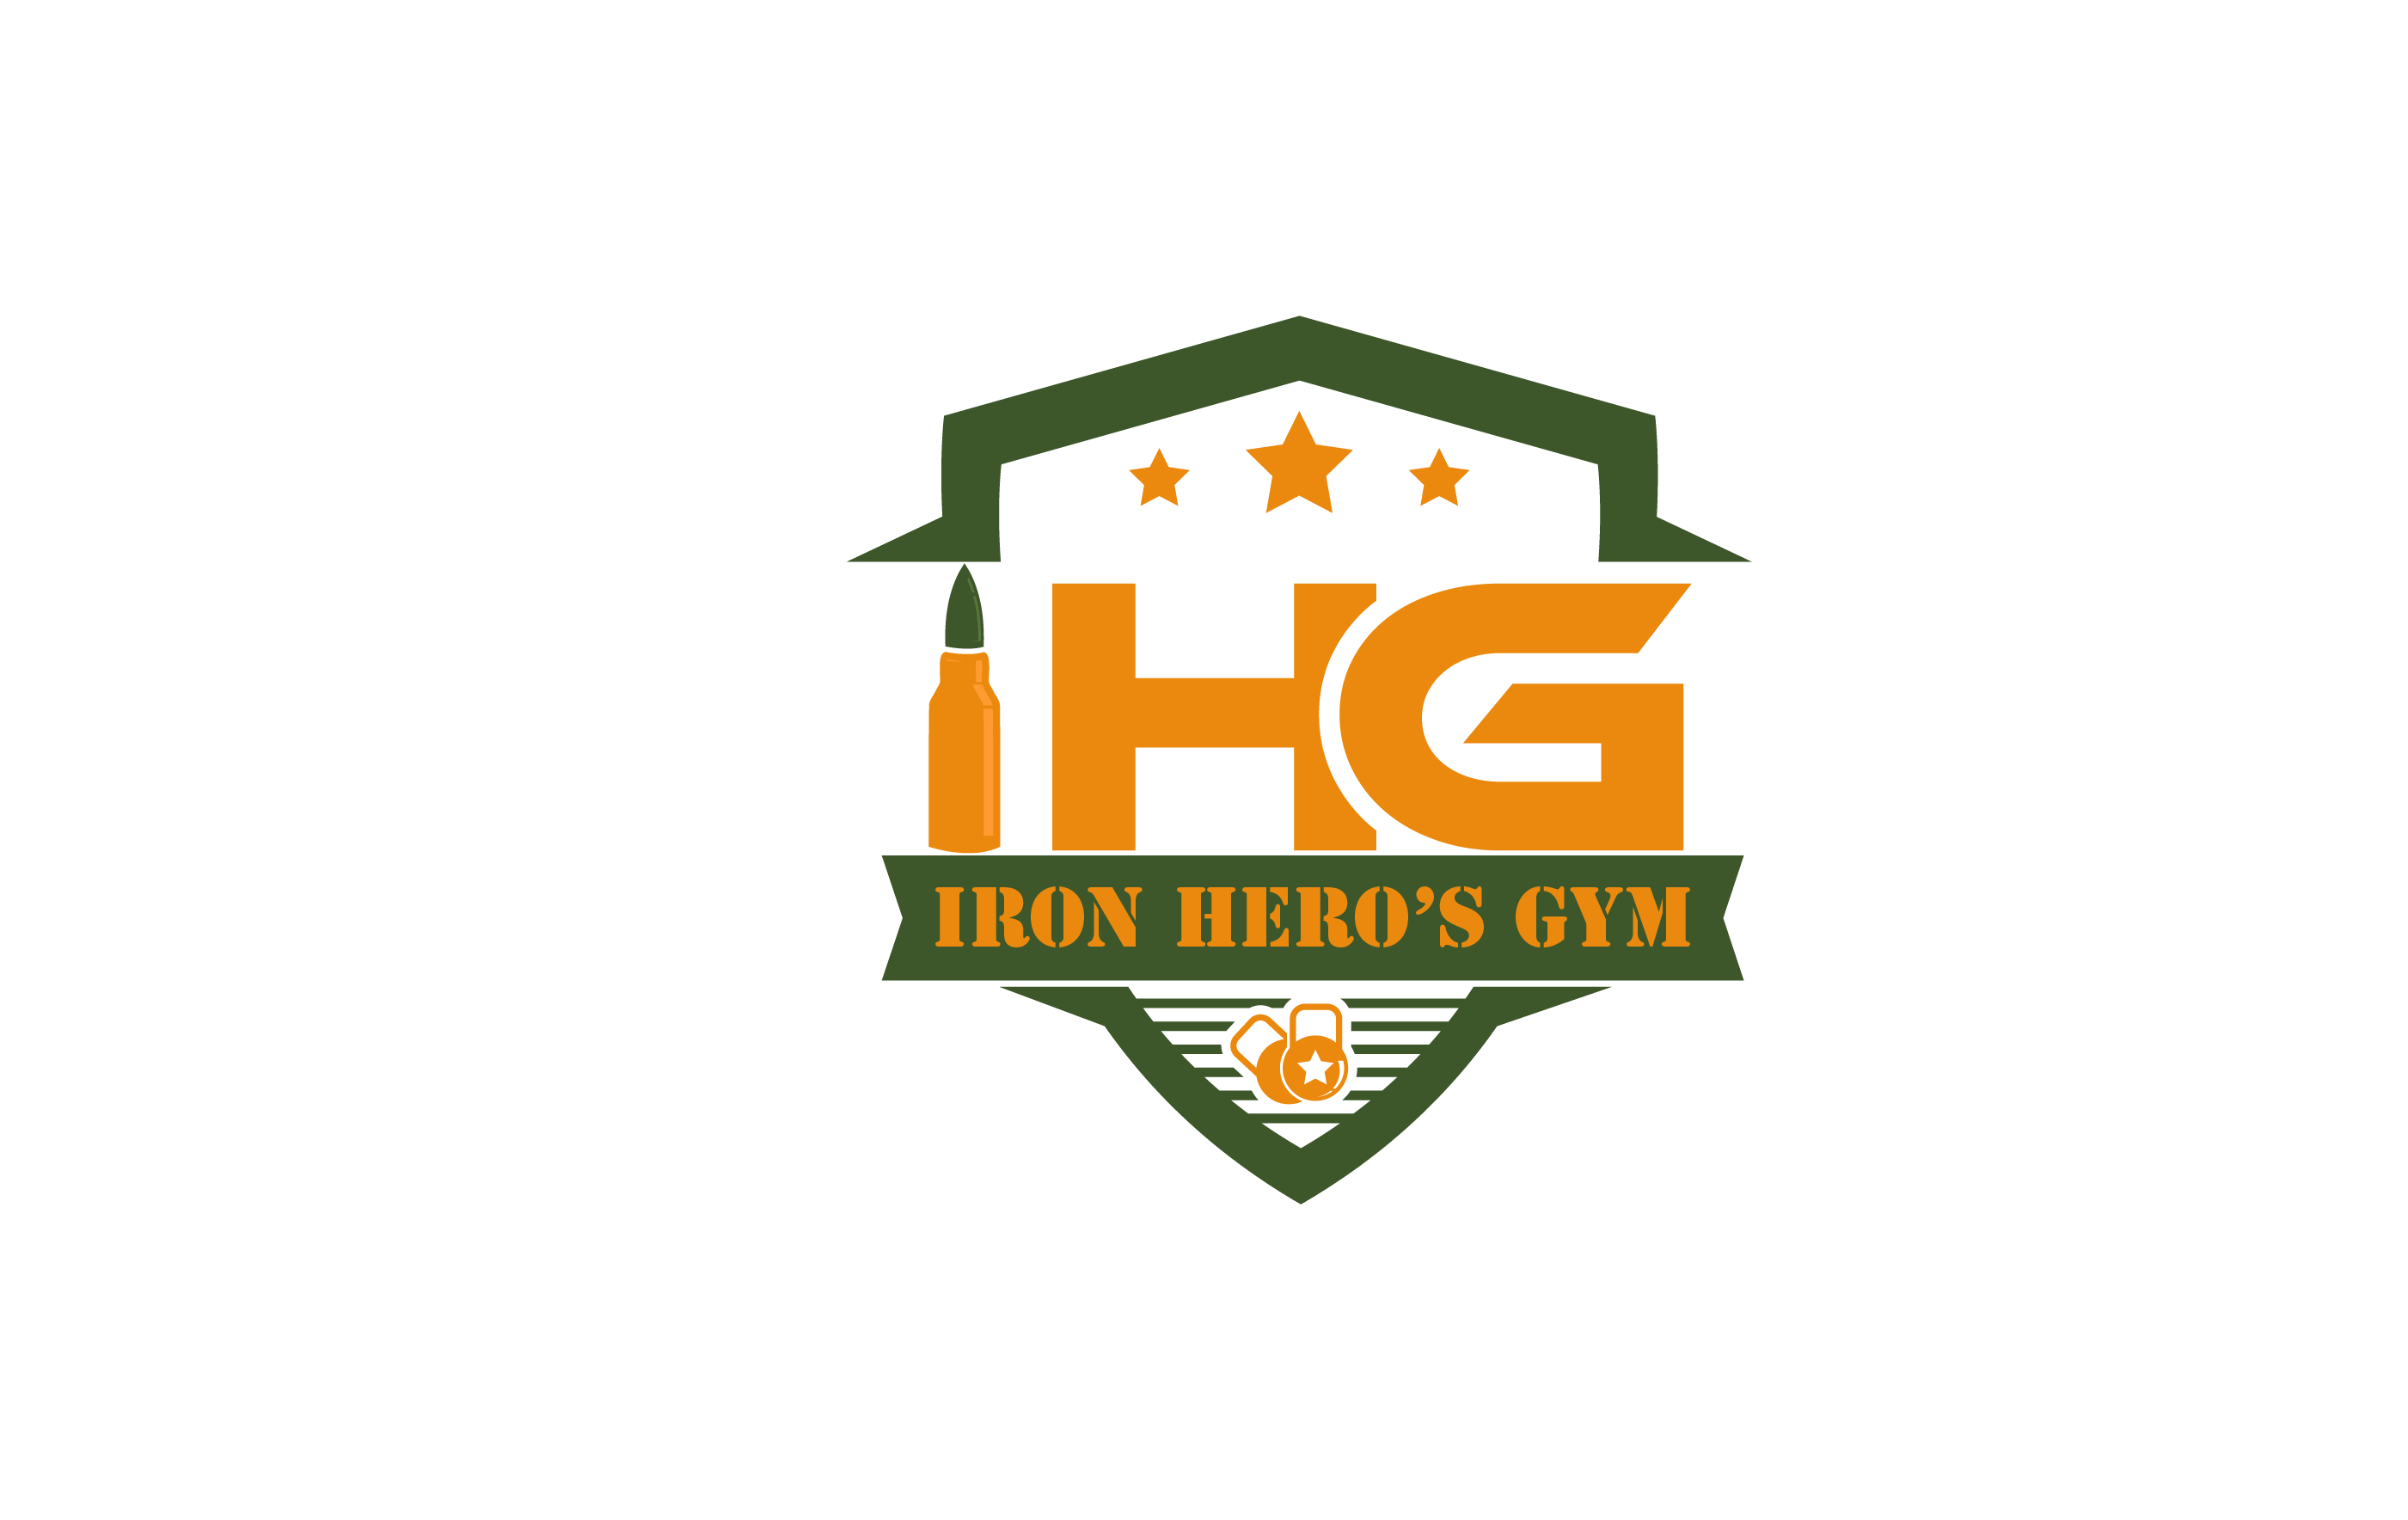 Iron Heros Gym